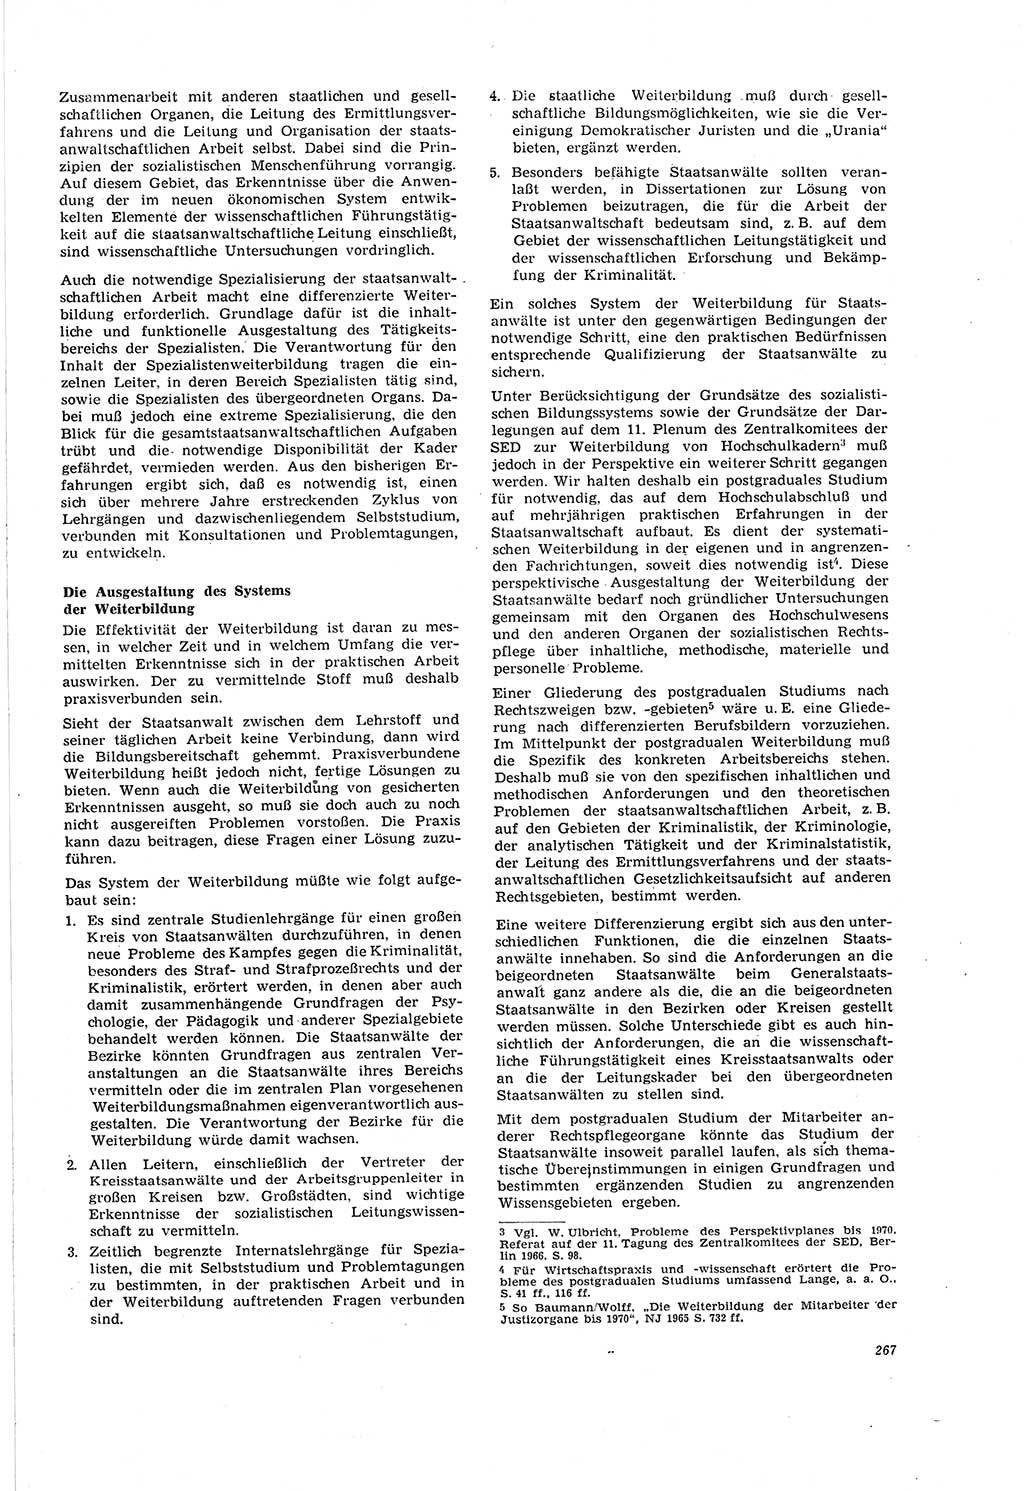 Neue Justiz (NJ), Zeitschrift für Recht und Rechtswissenschaft [Deutsche Demokratische Republik (DDR)], 20. Jahrgang 1966, Seite 267 (NJ DDR 1966, S. 267)